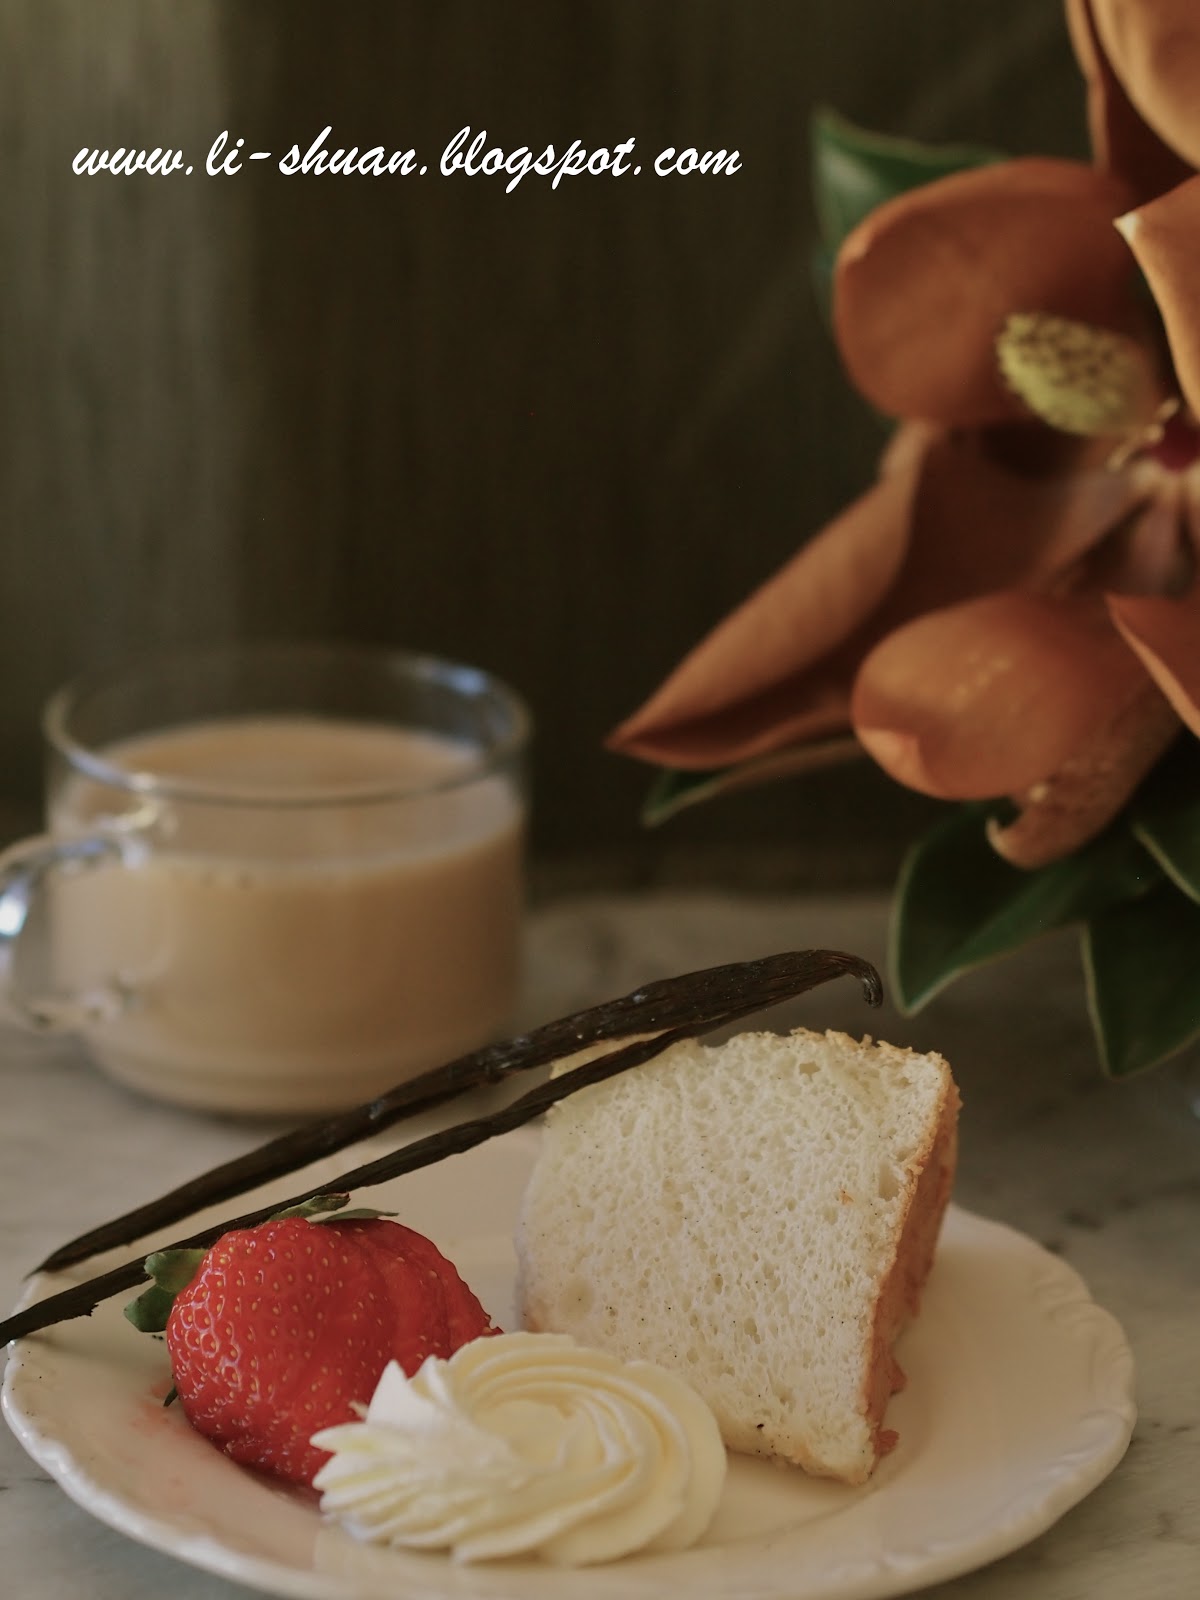 爱心草莓奶油蛋糕的做法_【图解】爱心草莓奶油蛋糕怎么做如何做好吃_爱心草莓奶油蛋糕家常做法大全_vanessa0808_豆果美食